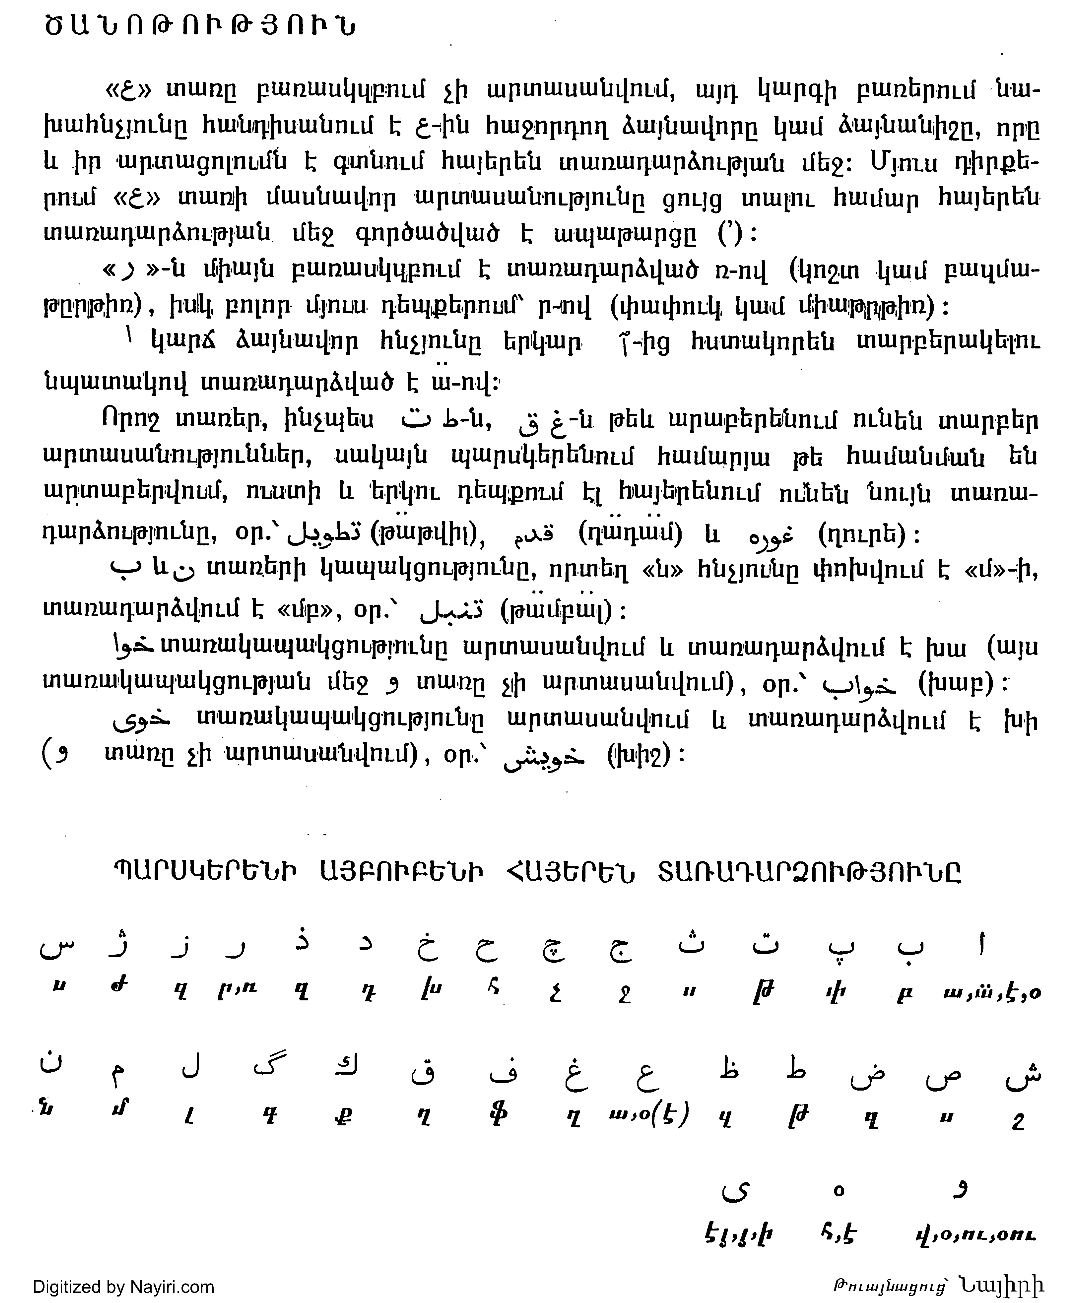 漫谈：哈萨克文字母、字体、输入法及其他 - 知乎